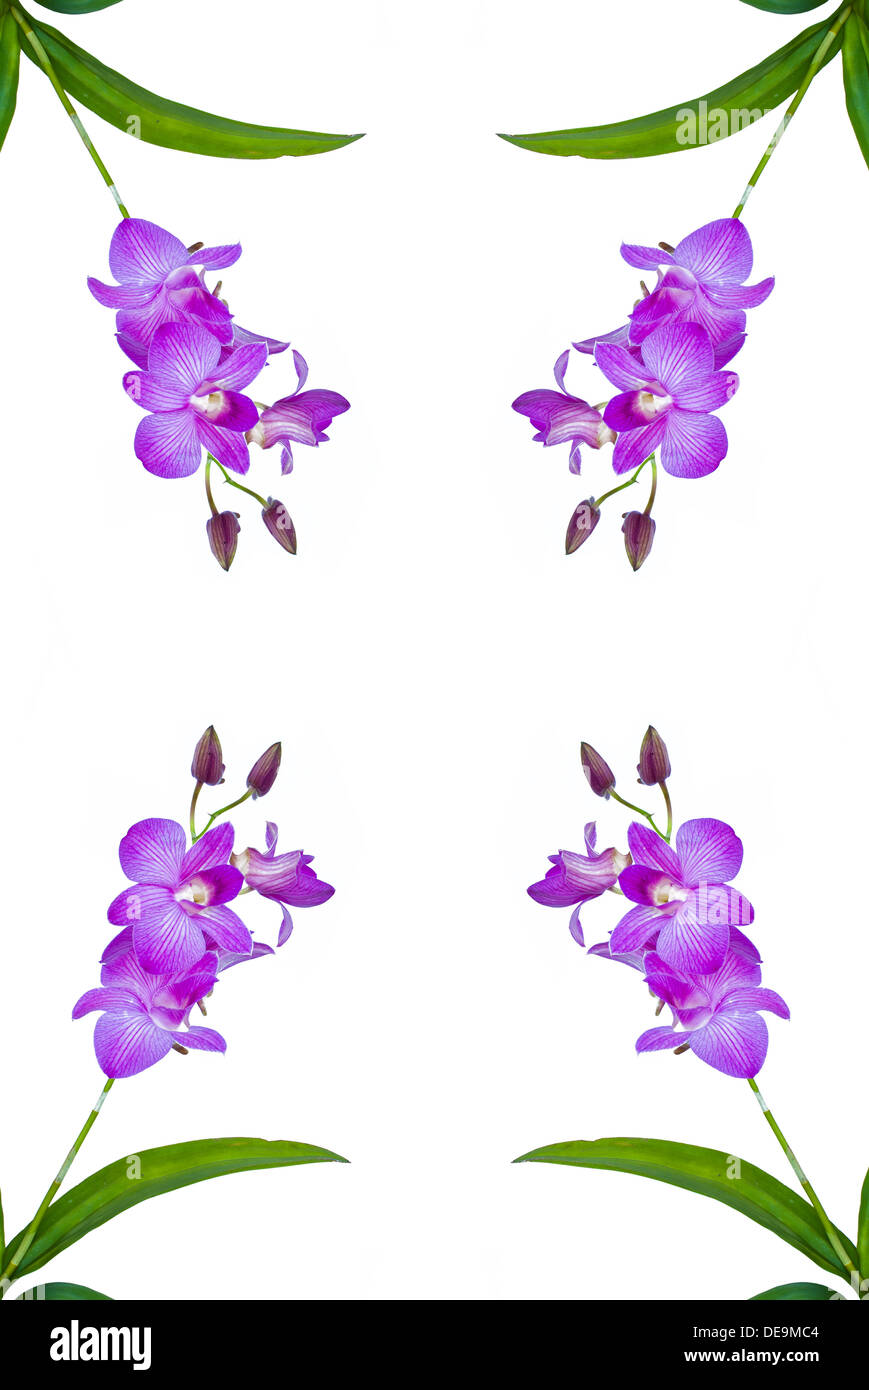 Zusammenfassung Hintergrund schön Schönheit violette Blüte botanische Strauß Filiale leuchtend Knospe sauber Orchidee Landschaft Blumenrahmen Stockfoto